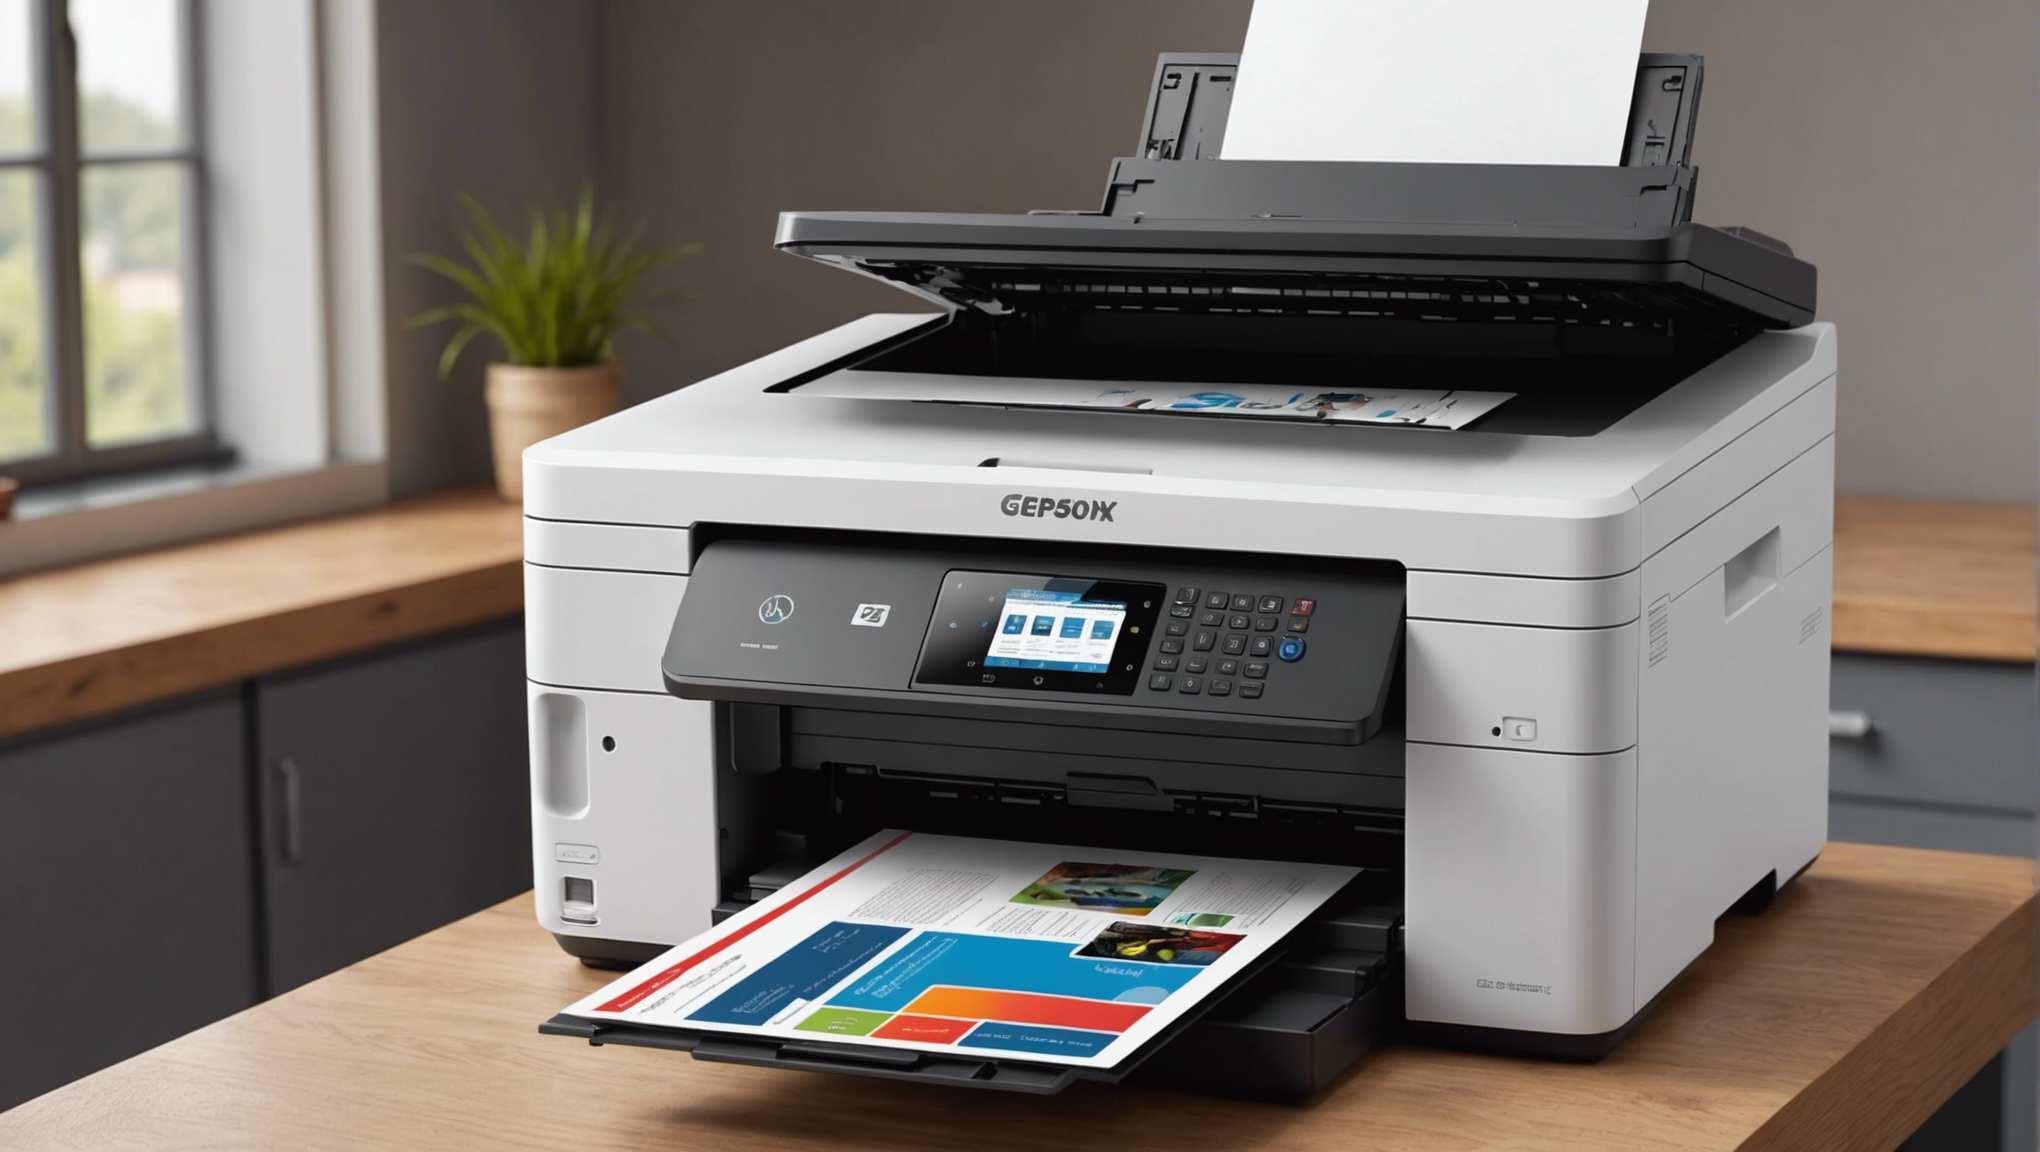 découvrez les meilleures marques d'imprimantes professionnelles à prix abordables pour un équipement de qualité adapté à votre entreprise.